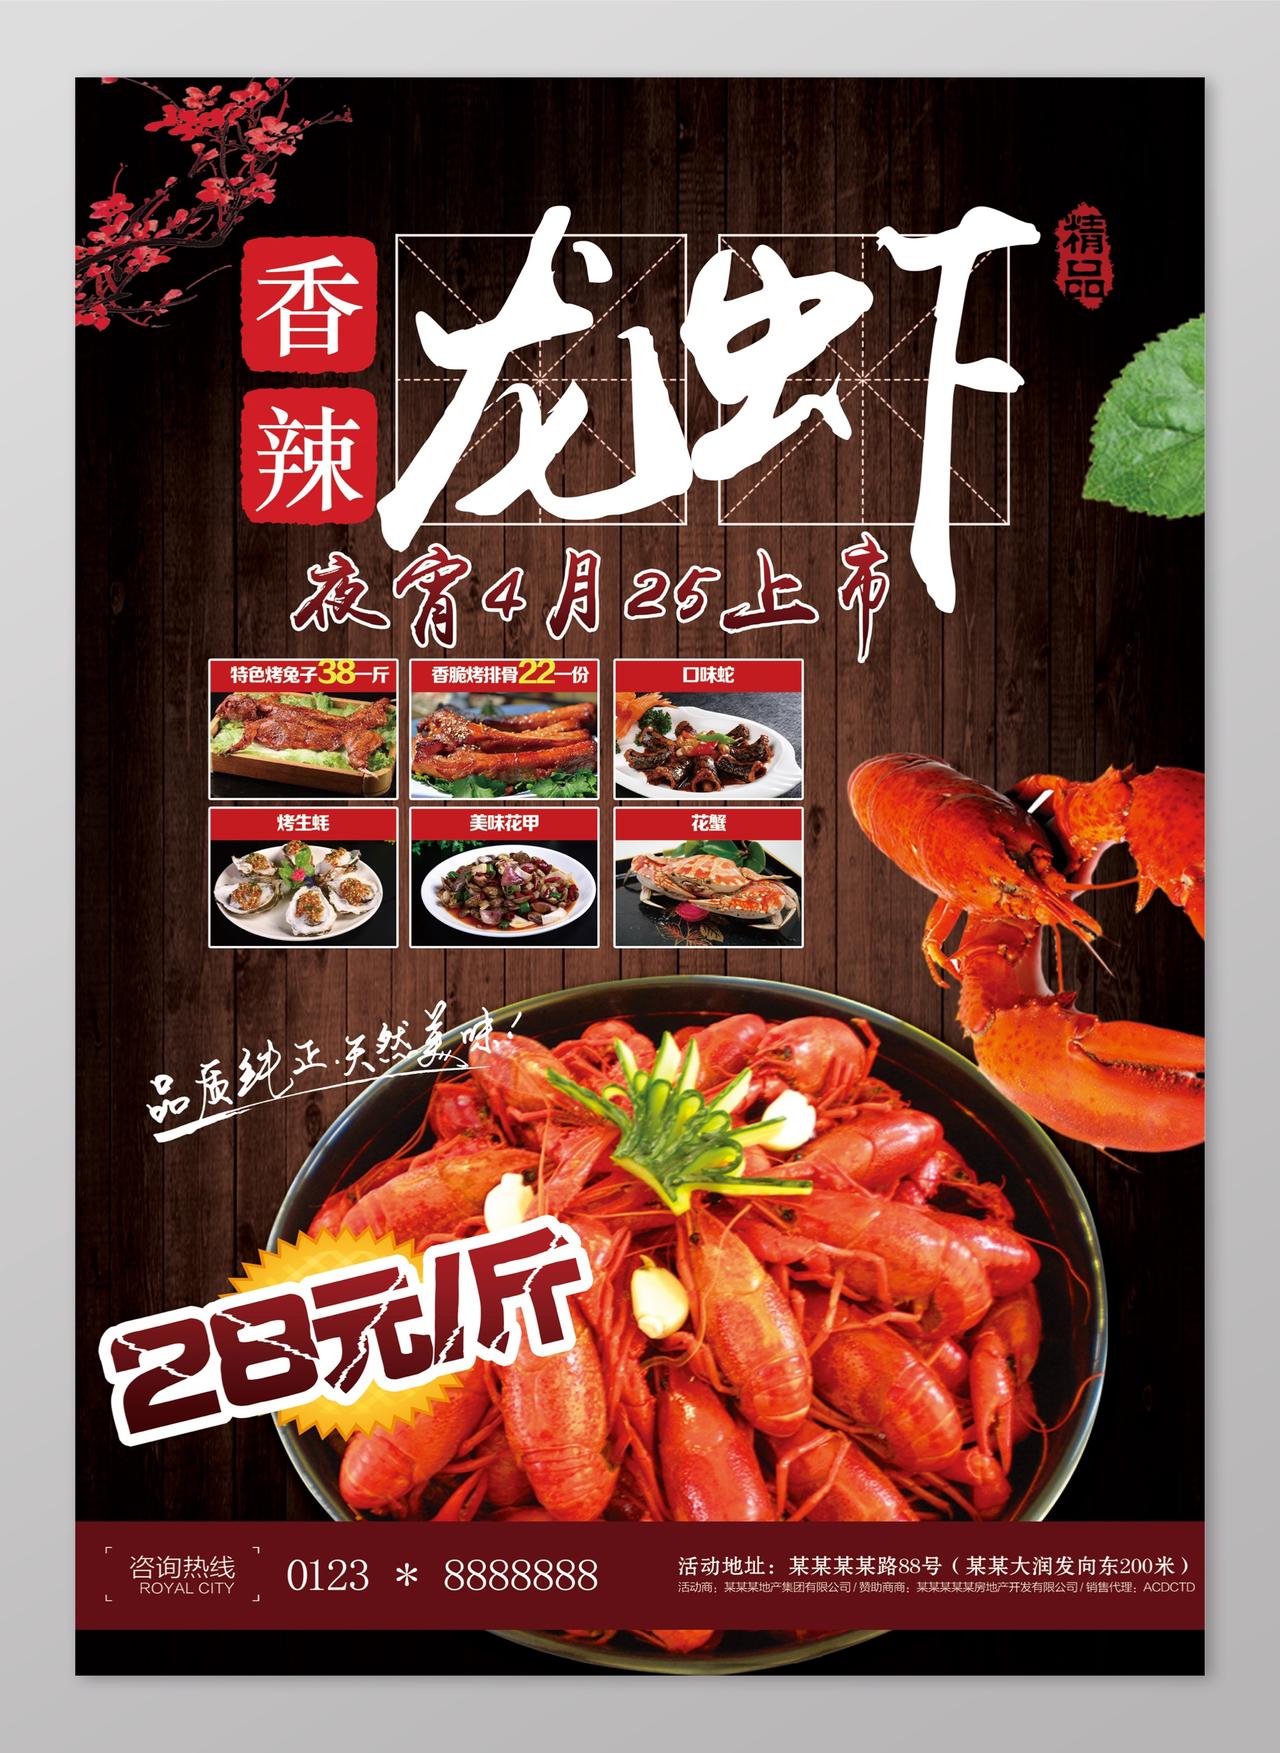 夜宵上市香辣小龙虾生鲜美食海报